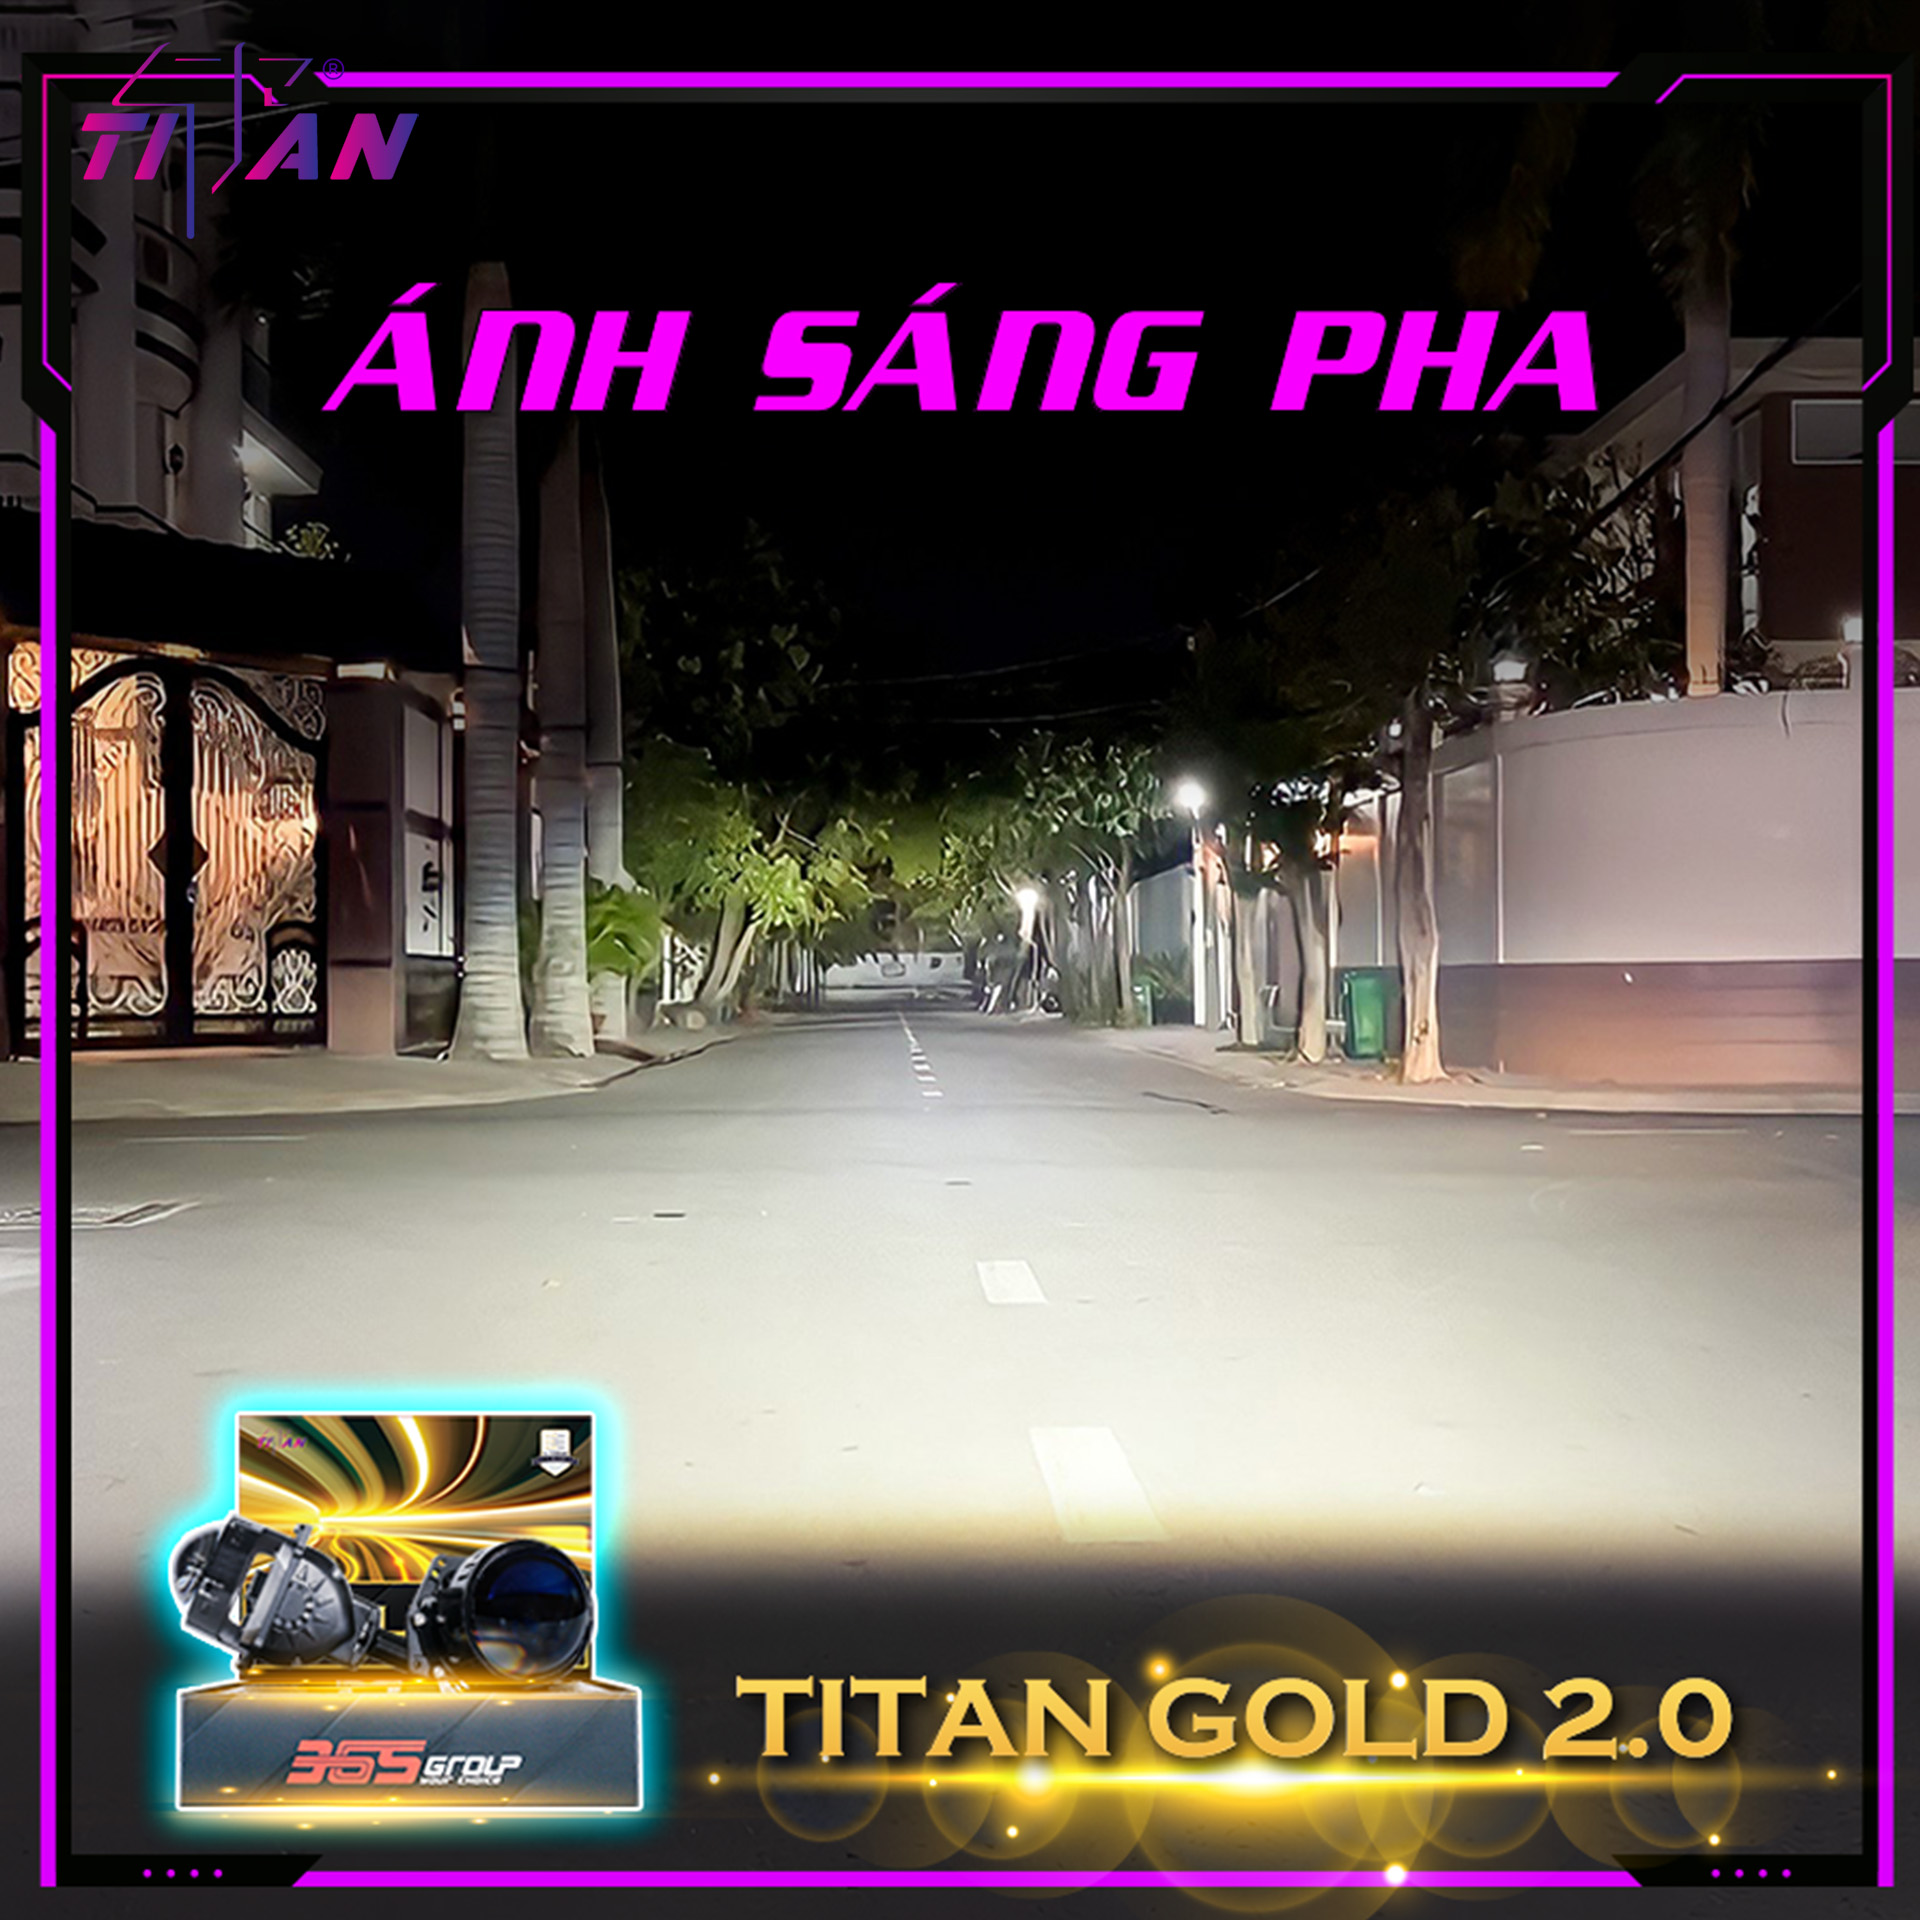 BI LED TITAN GOLD 2.0